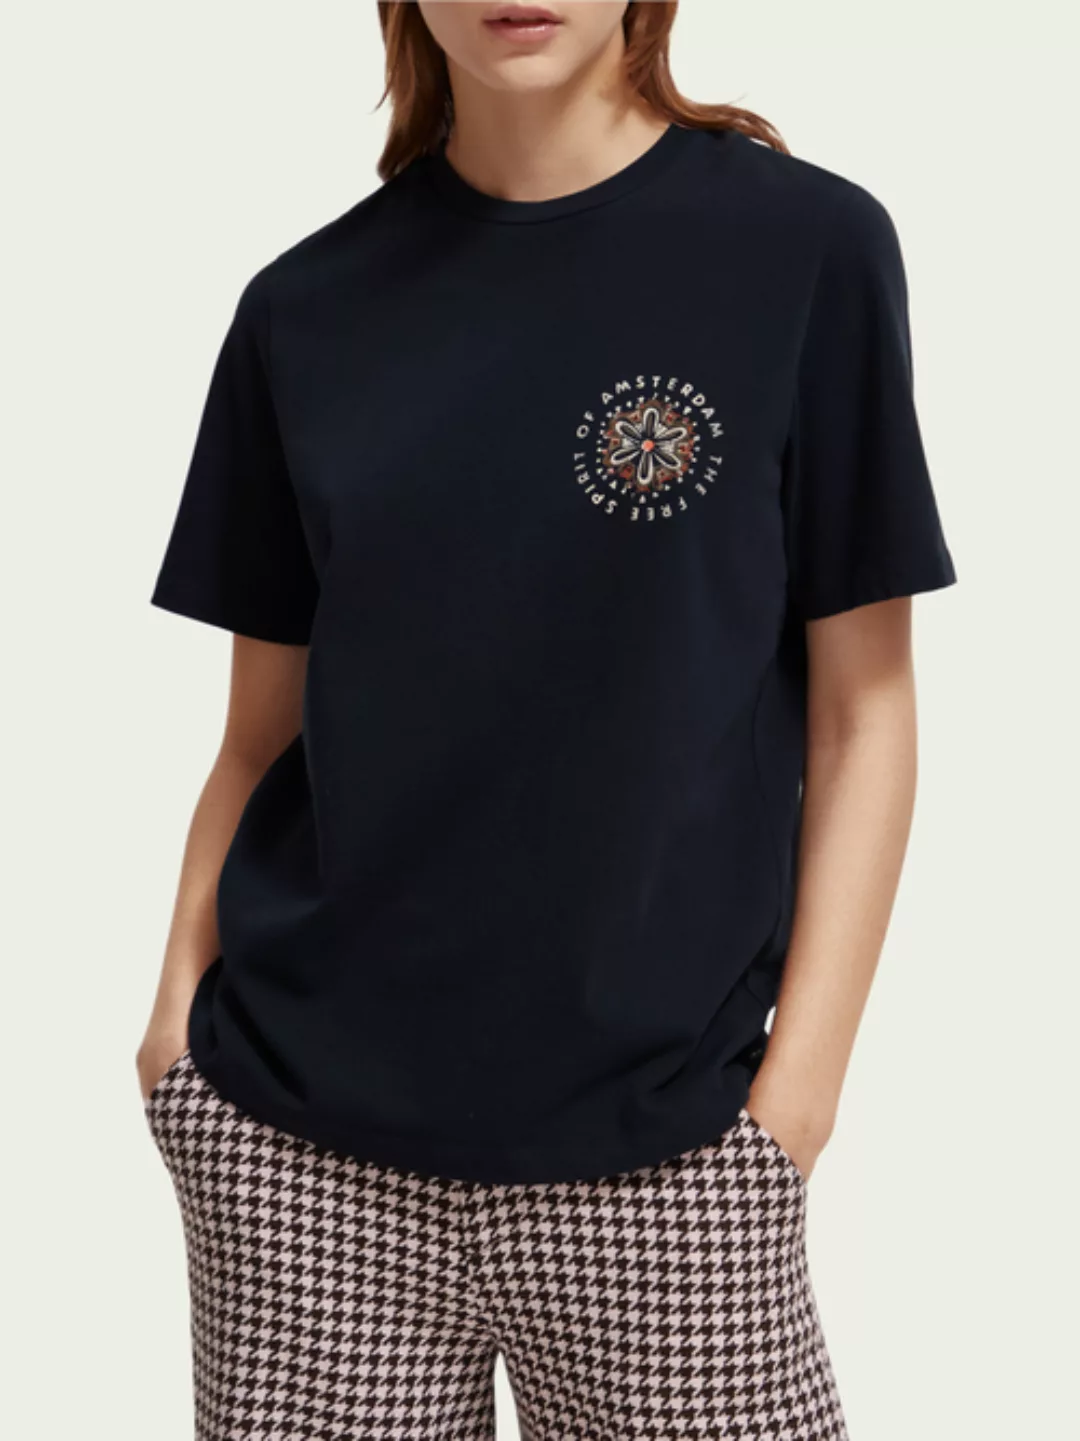 Scotch Shrunk Relaxed fit artwork T-shirt günstig online kaufen